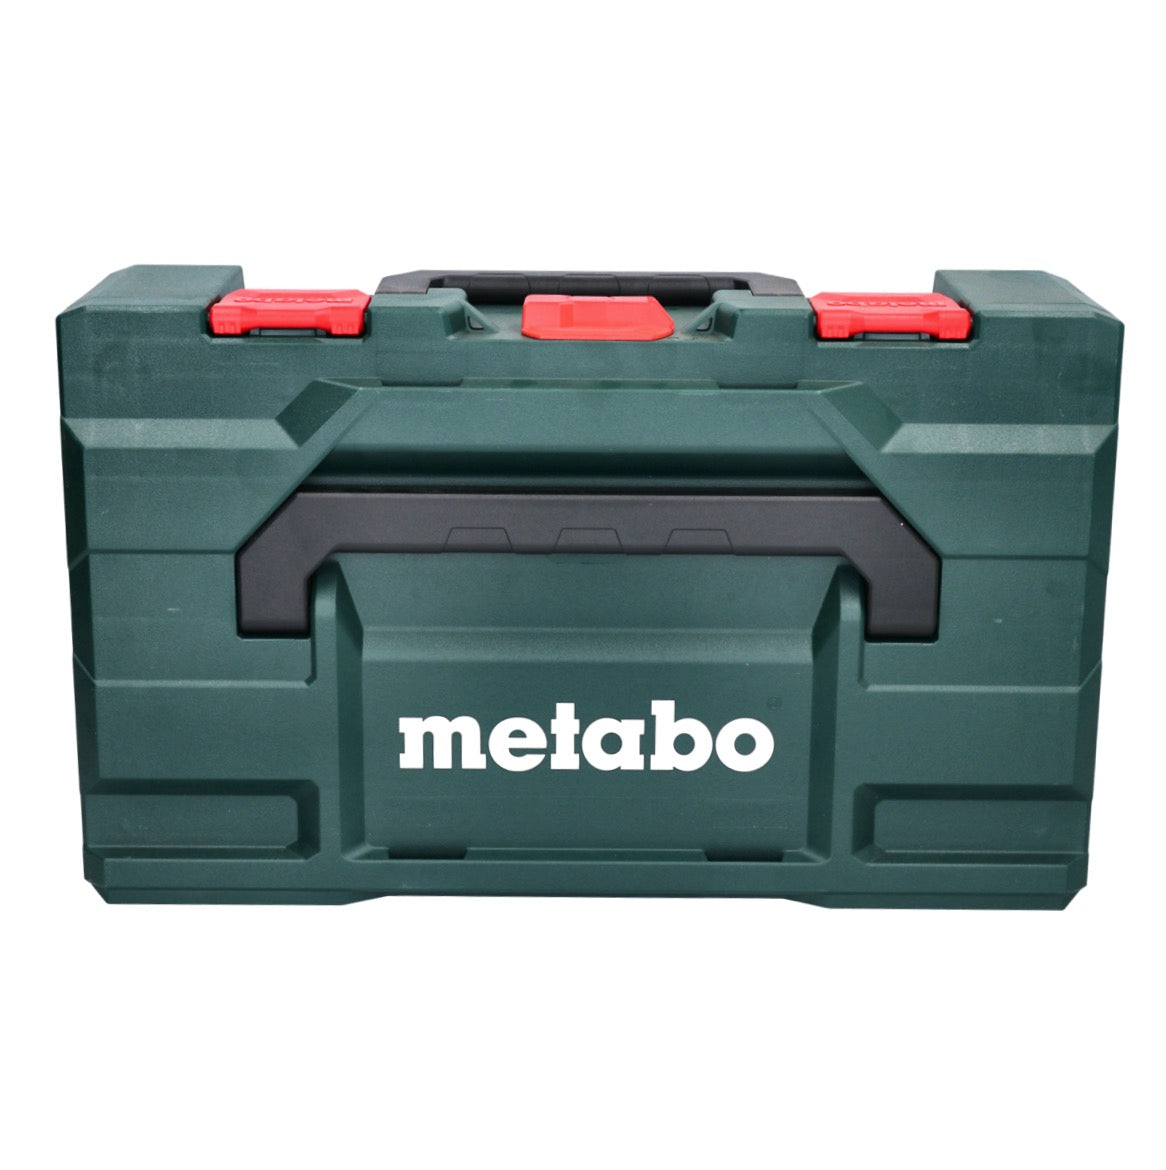 Metabo NP 18 LTX BL 5.0 Riveteuse sans fil 10kN 18V  Brushless Solo + Coffret metaBOX - sans batterie, sans chargeur - GRATUIT - 3 ans de protection complète   (619002840)